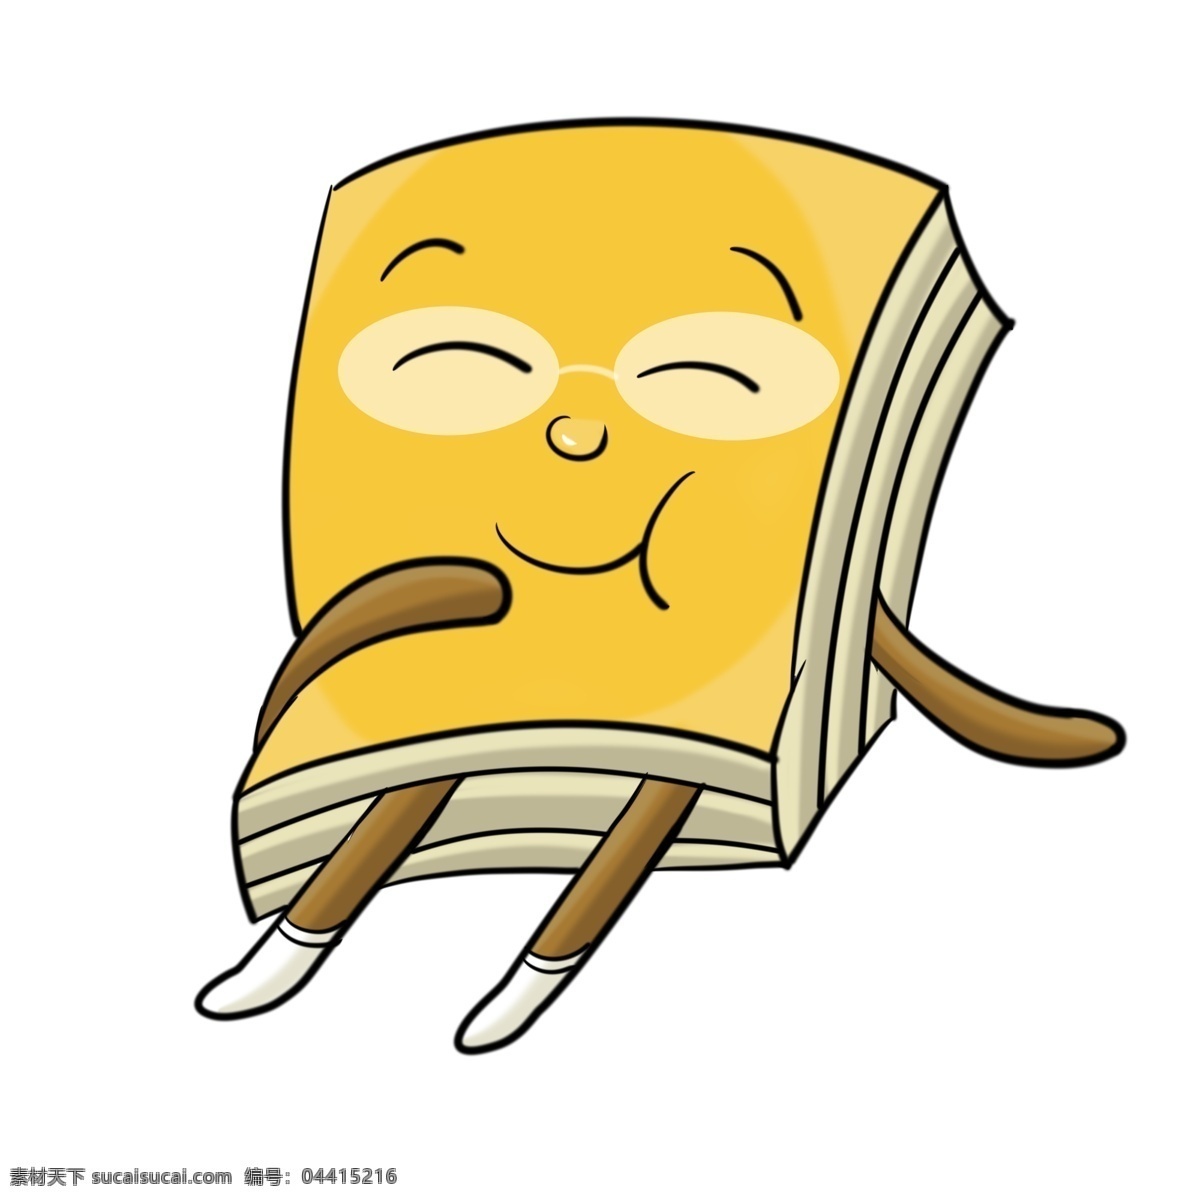 开心 小 书本 插图 微笑的小书本 高兴的小书本 开心的小书本 小书本 小书本插图 高兴的书籍